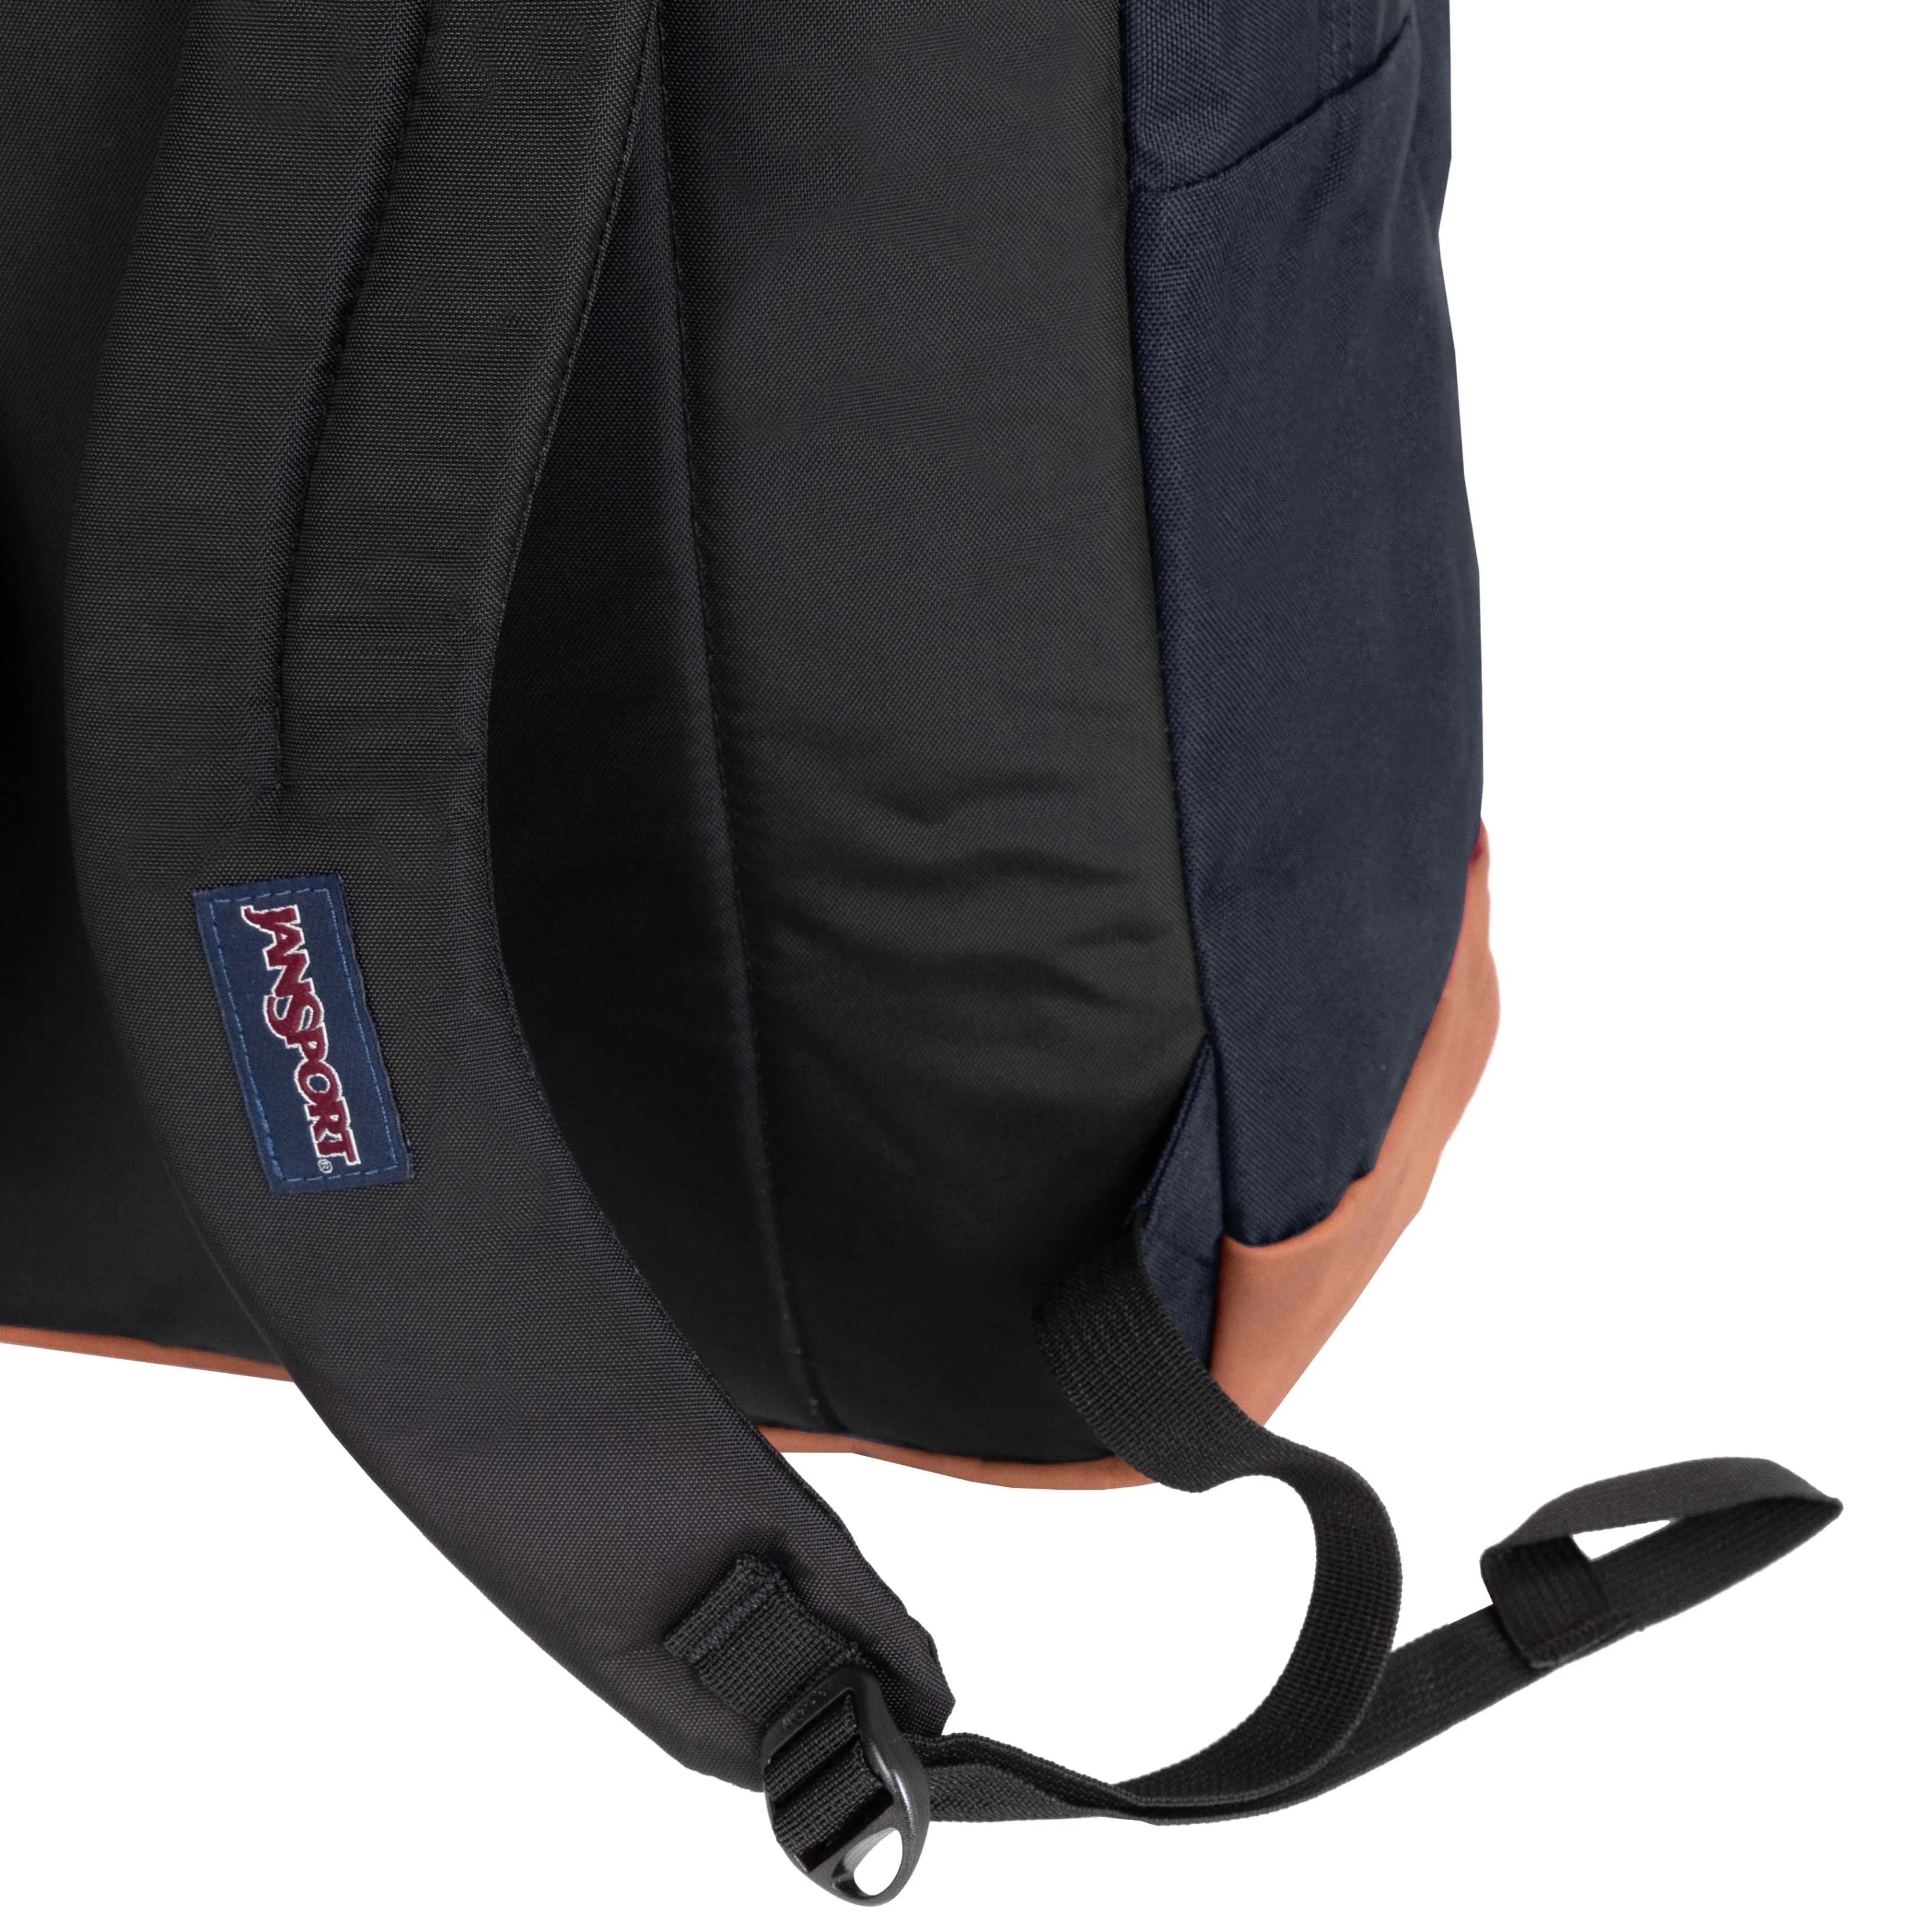 Jansport Cool Student Backpack 43 cm - Black